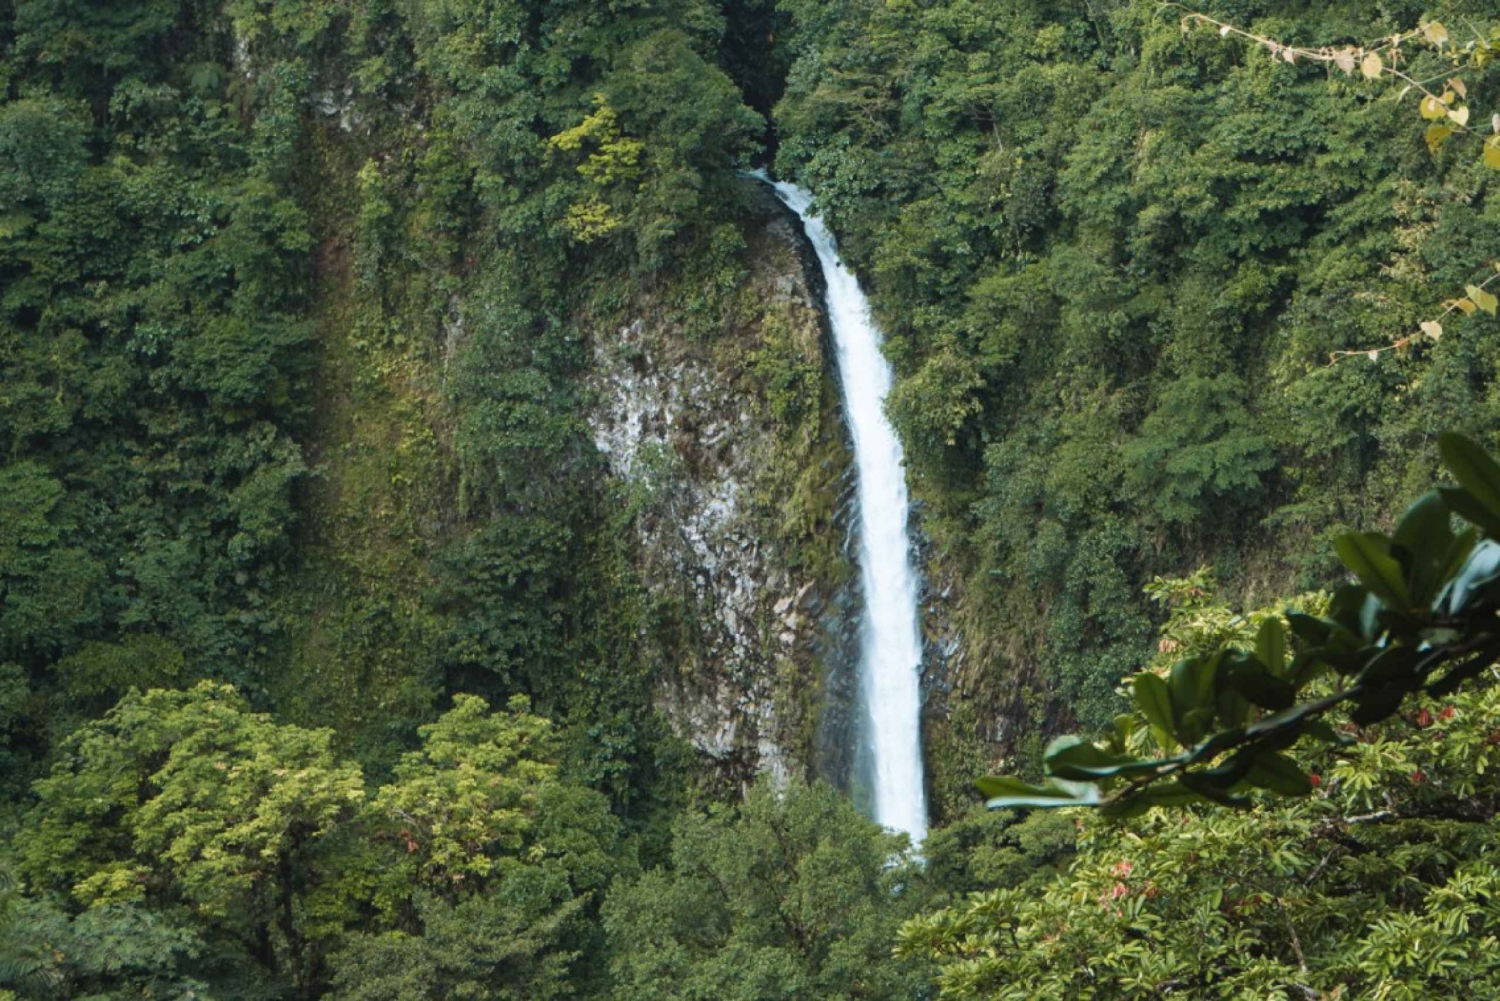 La Fortuna: Tour to the La Fortuna Waterfalls